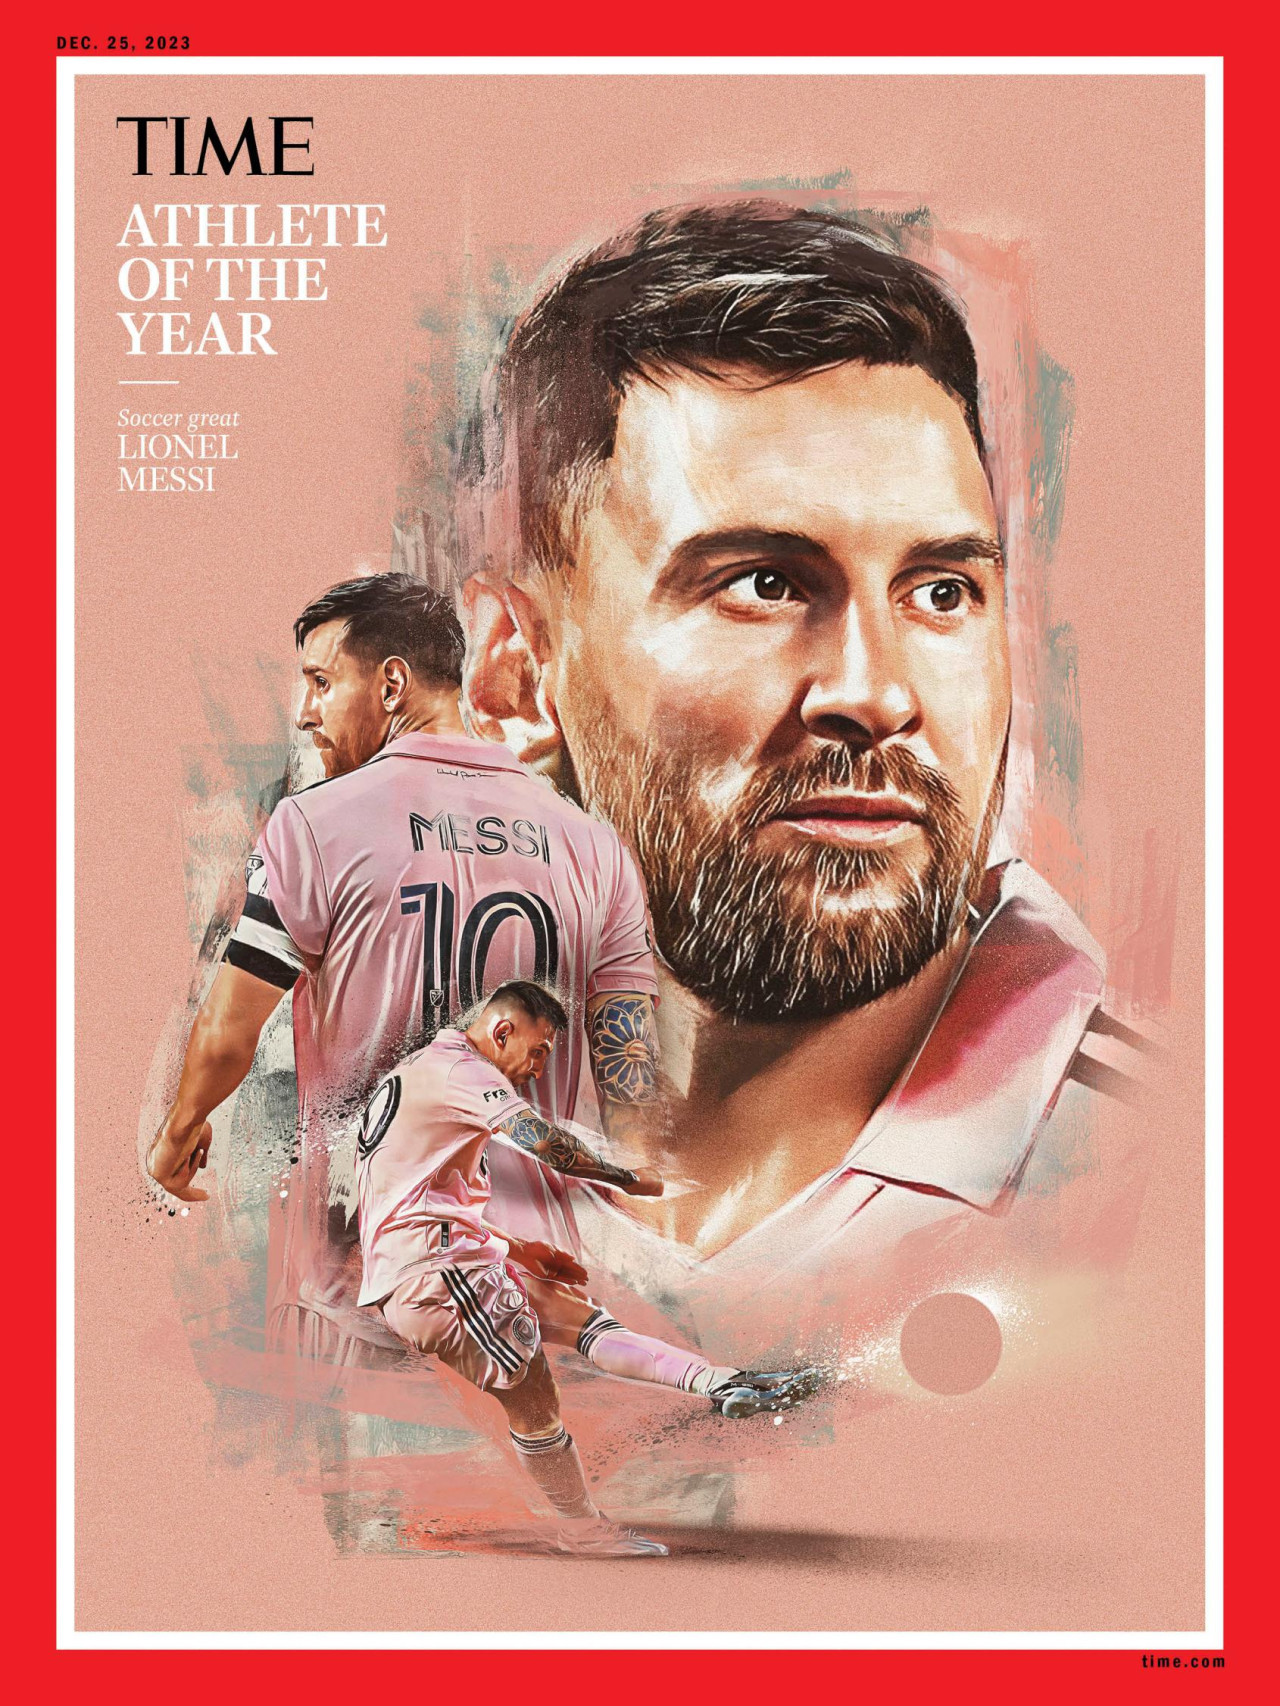 Lionel Messi es el deportista del año, según la revista Time. Foto: Time.